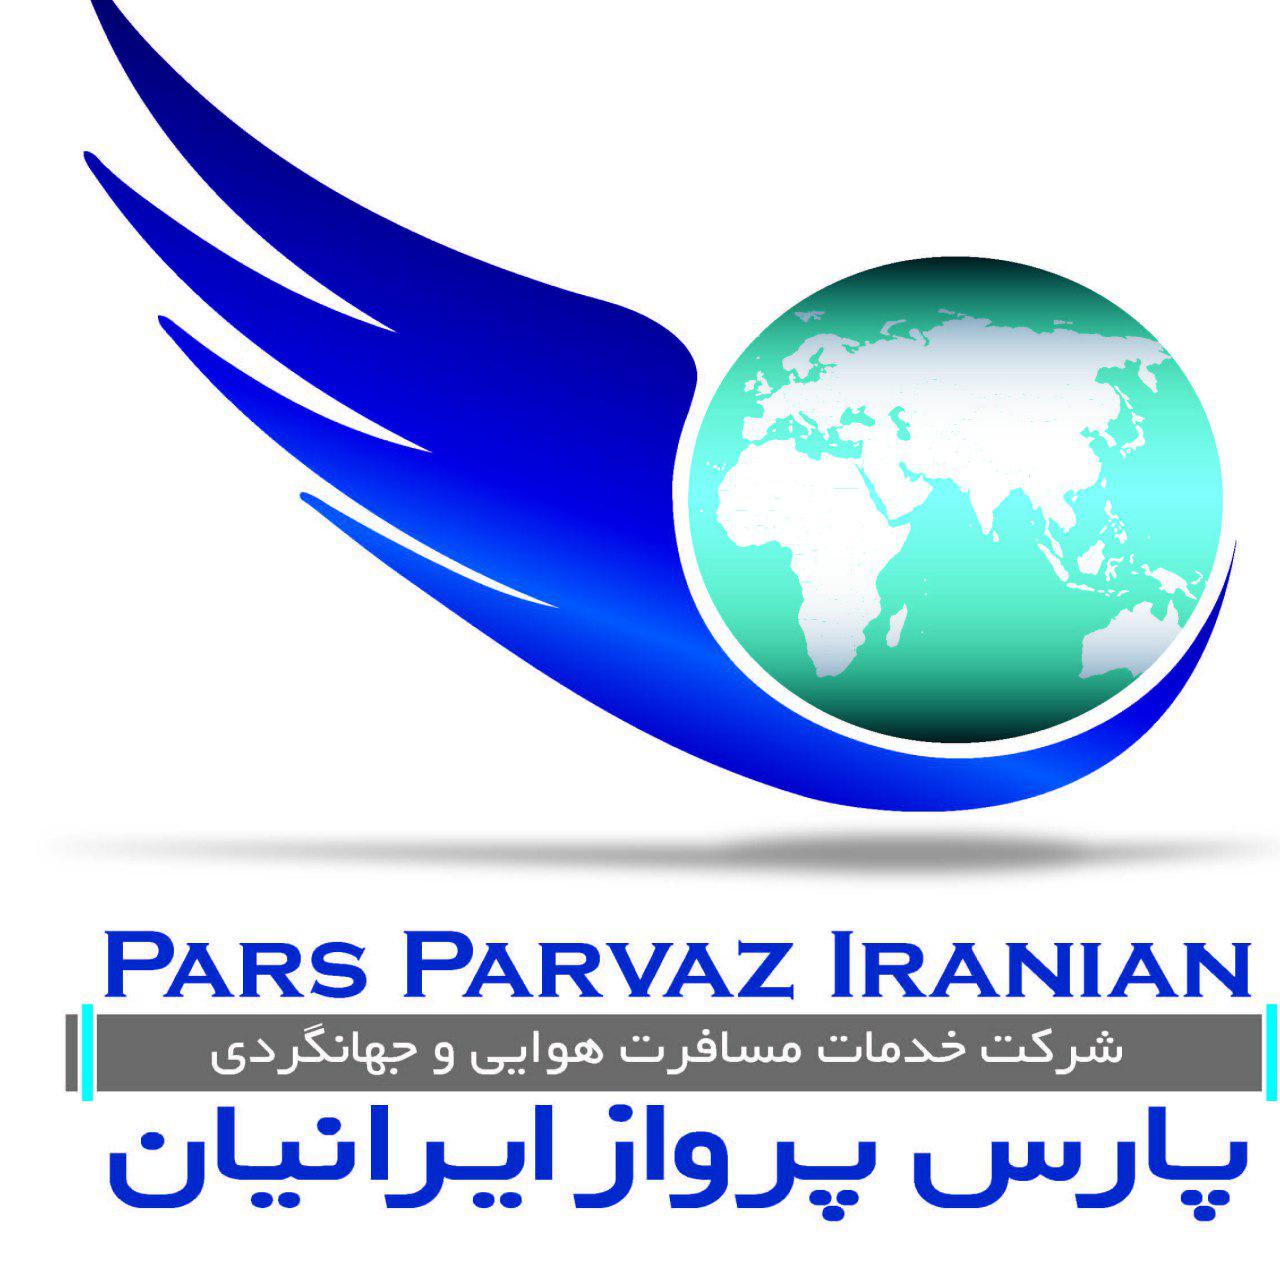 تورهای پارس پرواز ایرانیان